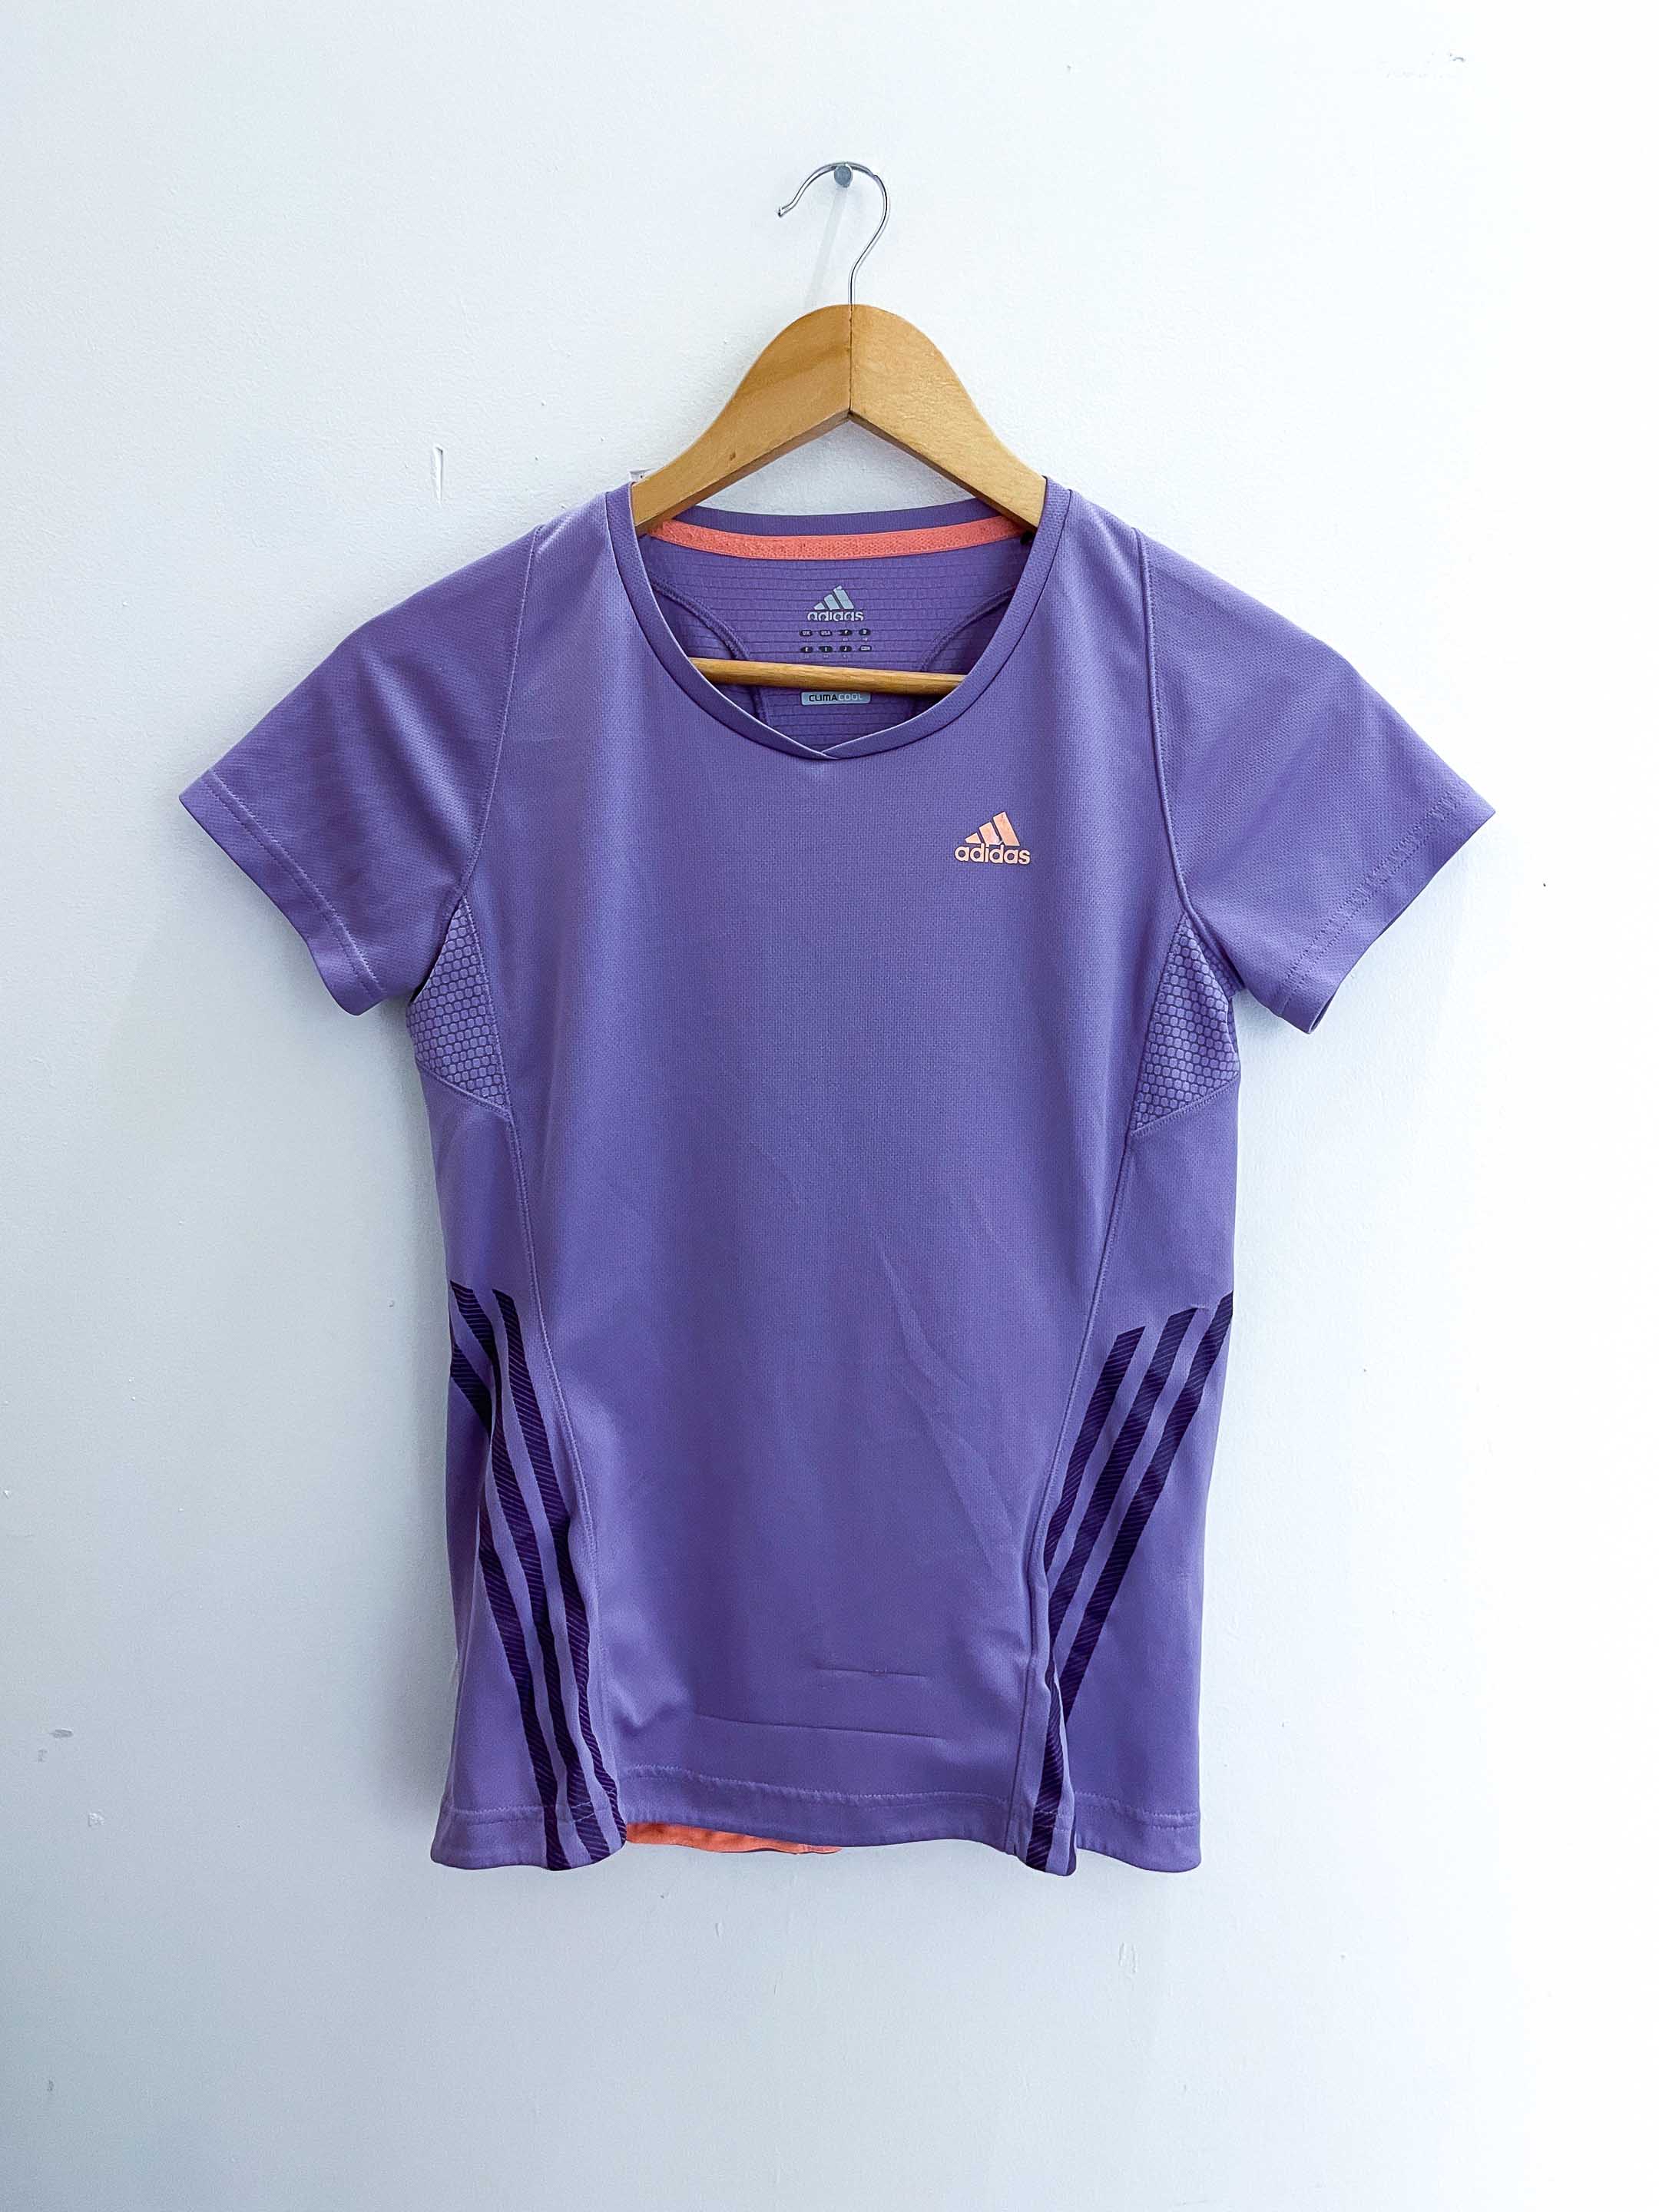 Vintage adidas climacool large purple training tshirt